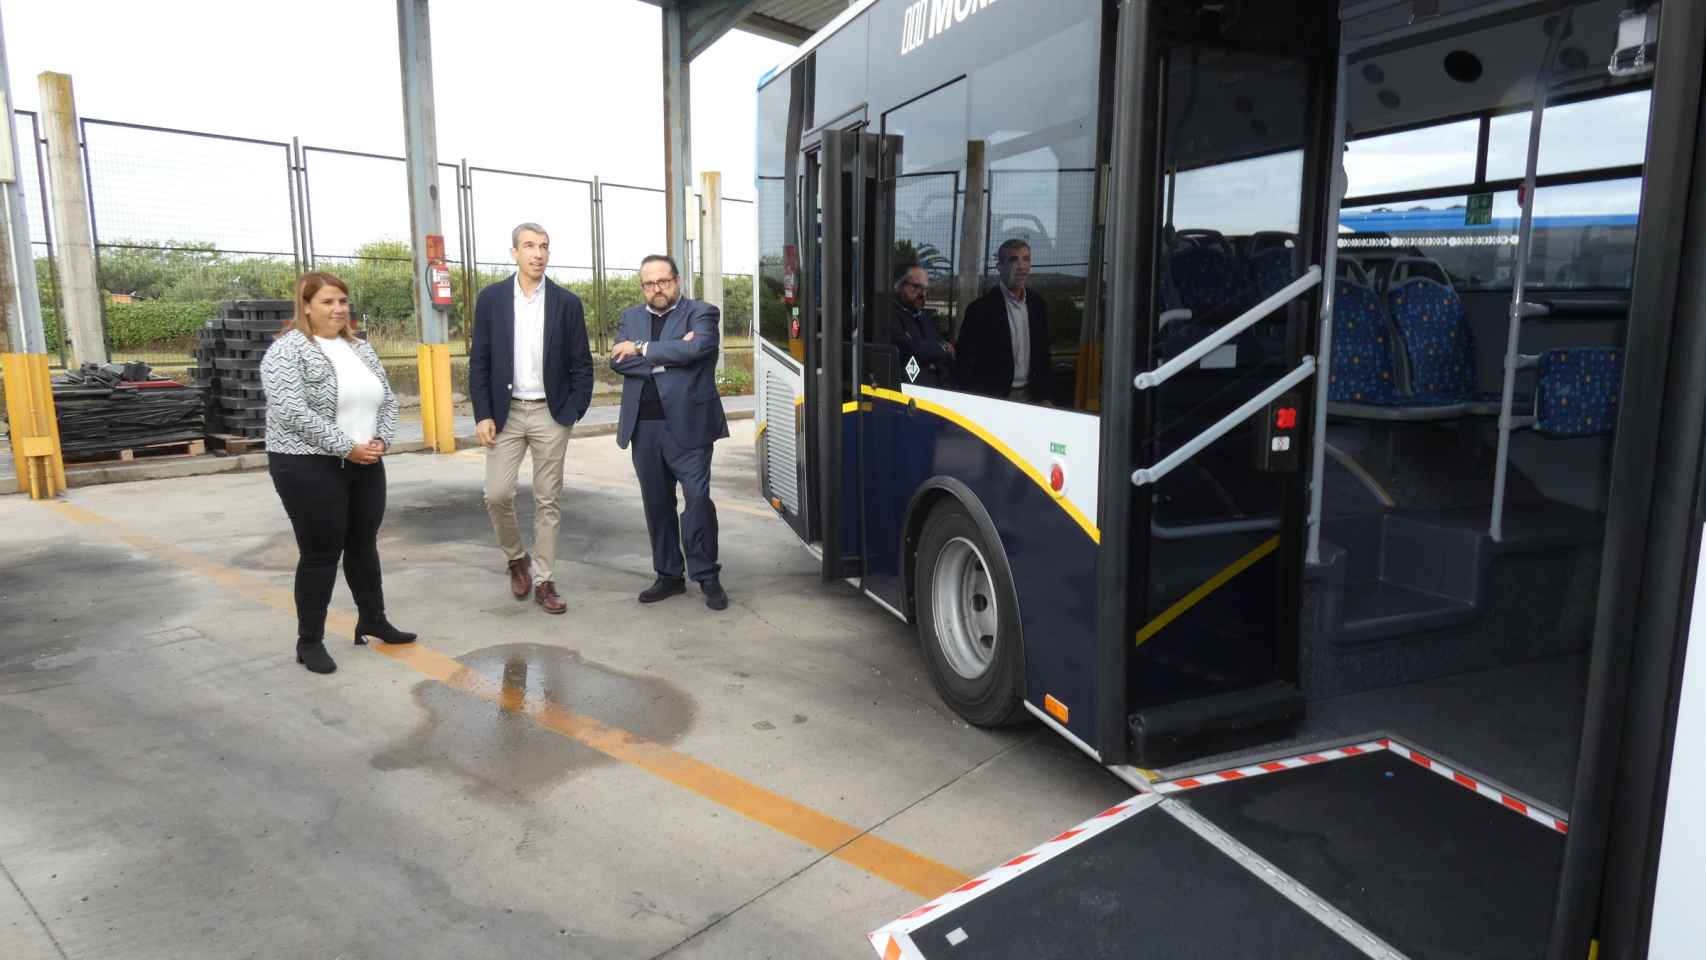 Los nuevos autobuses están adaptados para personas con discapacidad.